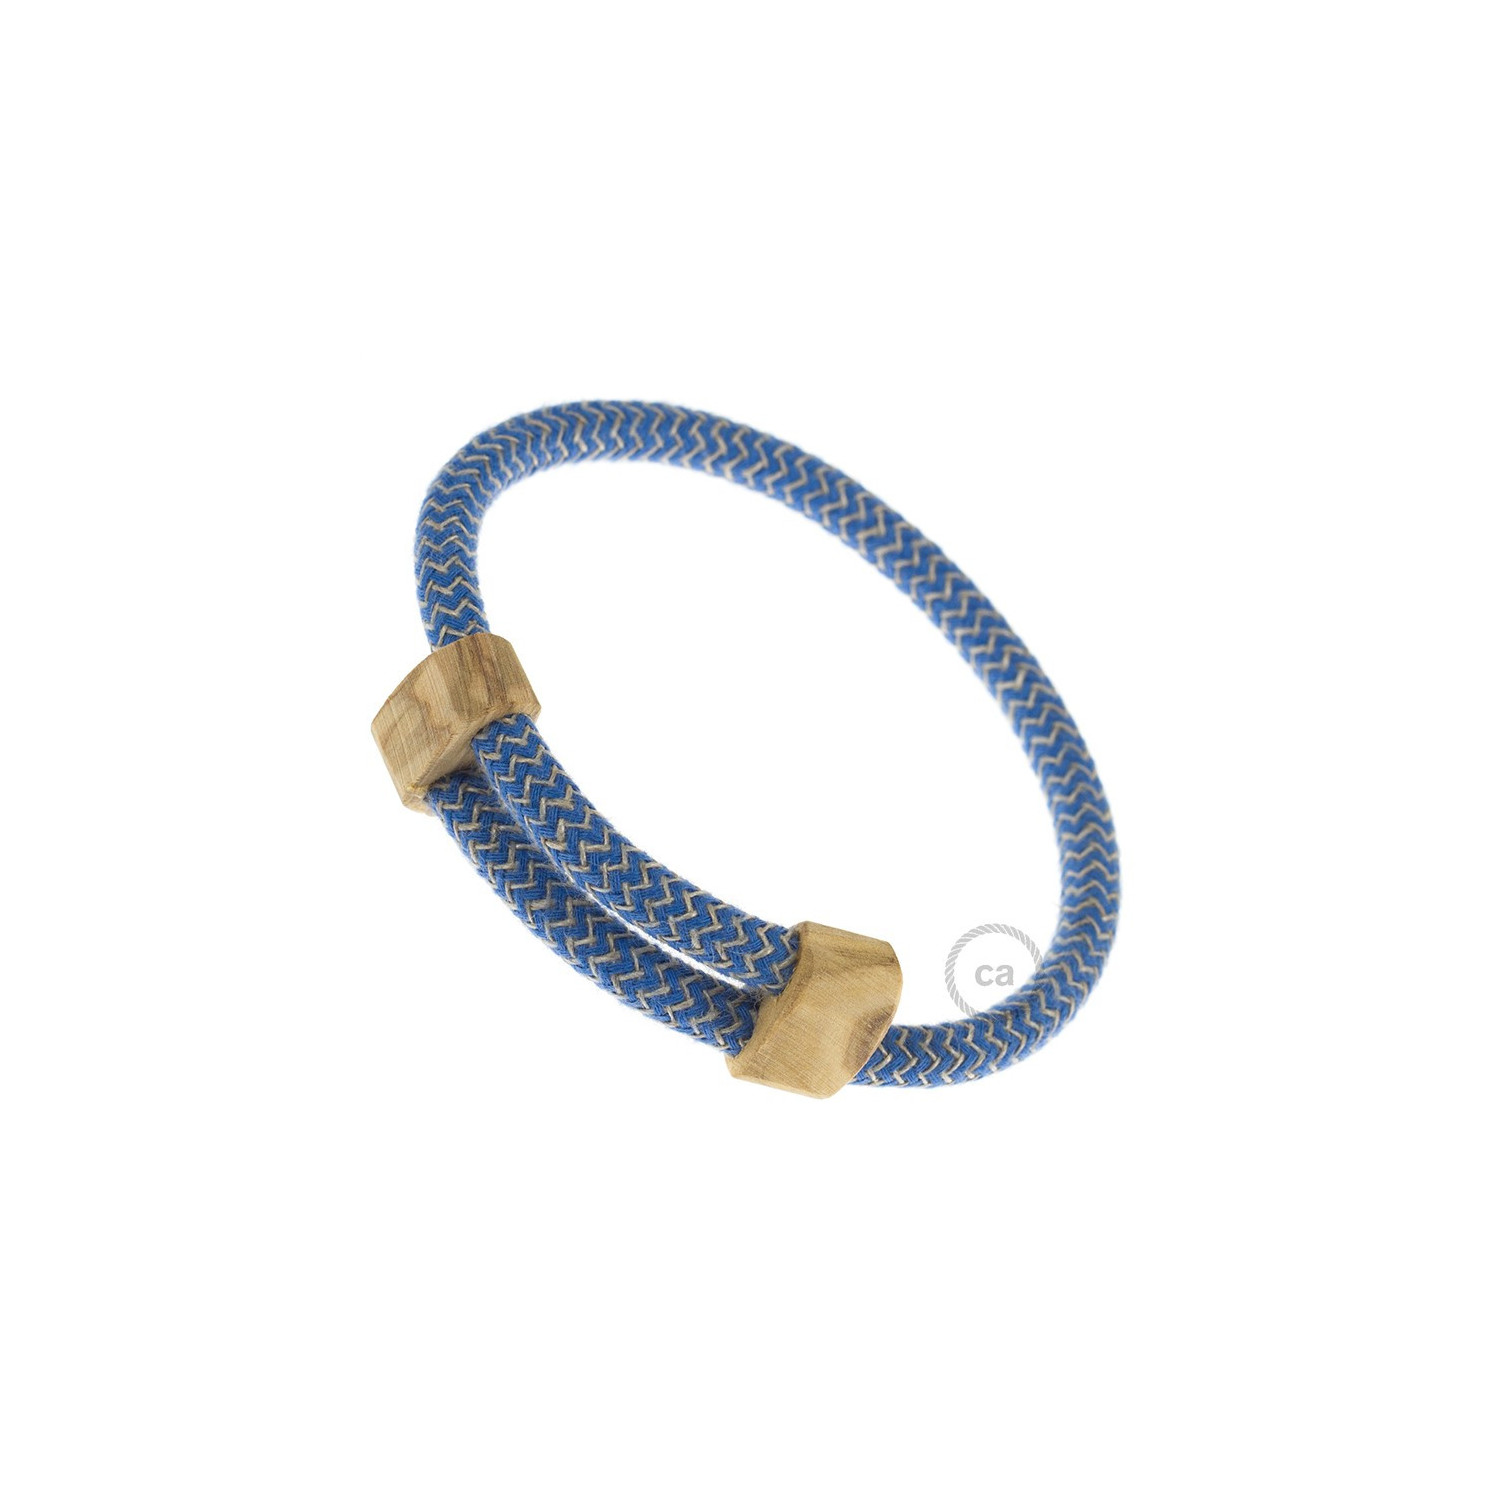 Creative-Bracelet in Cotone e Lino naturale Blu Steward RD75. Chiusura scorrevole in legno. Made in Italy.